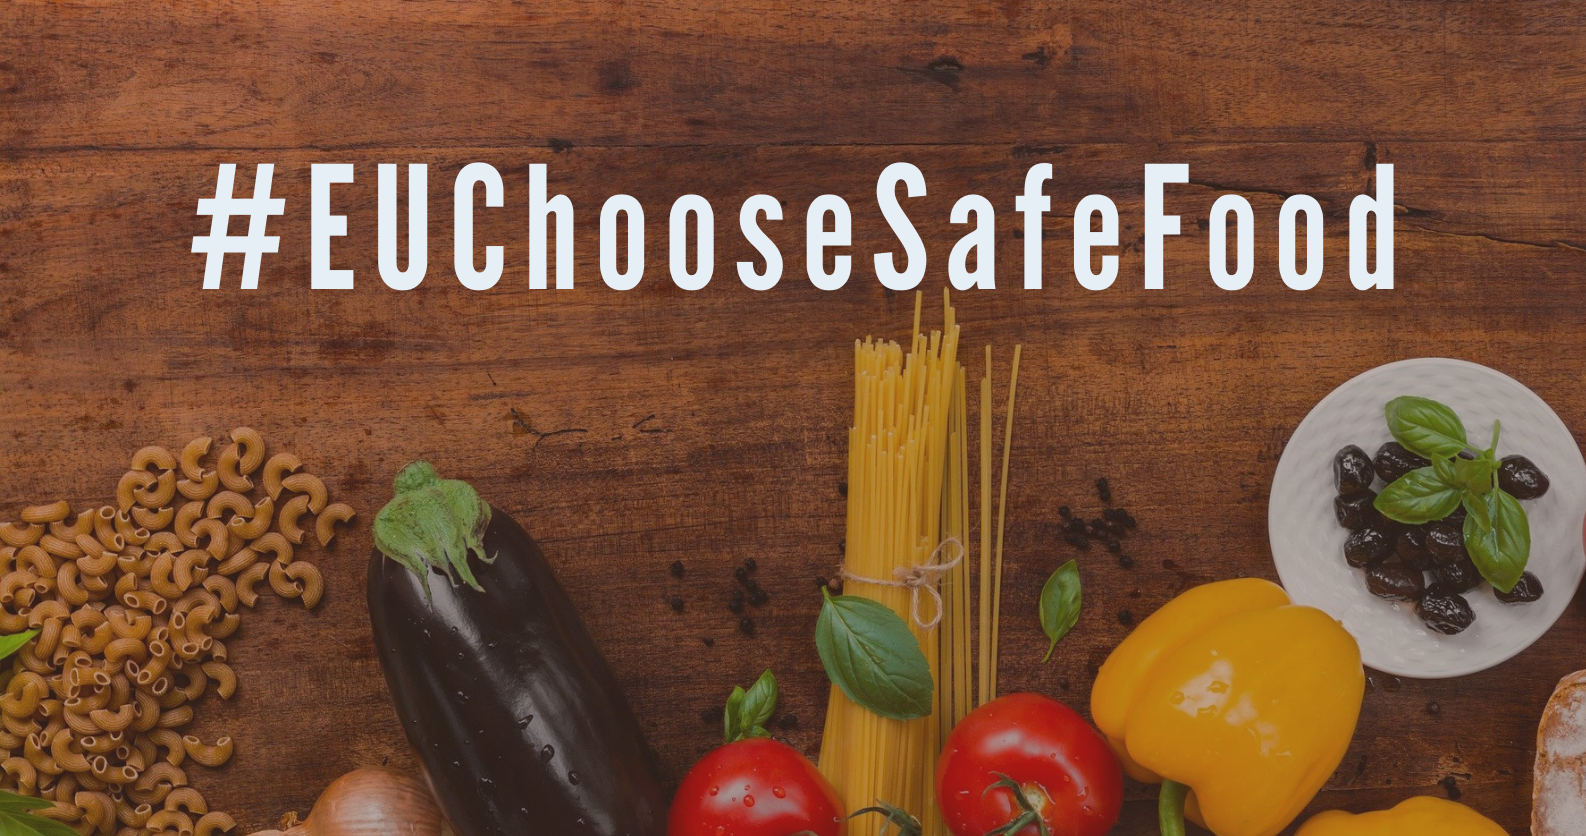 Europejski Urząd ds. Bezpieczeństwa Żywności oraz Państwowa Inspekcja Sanitarna ruszyły z kampanią #EUChooseSafeFood